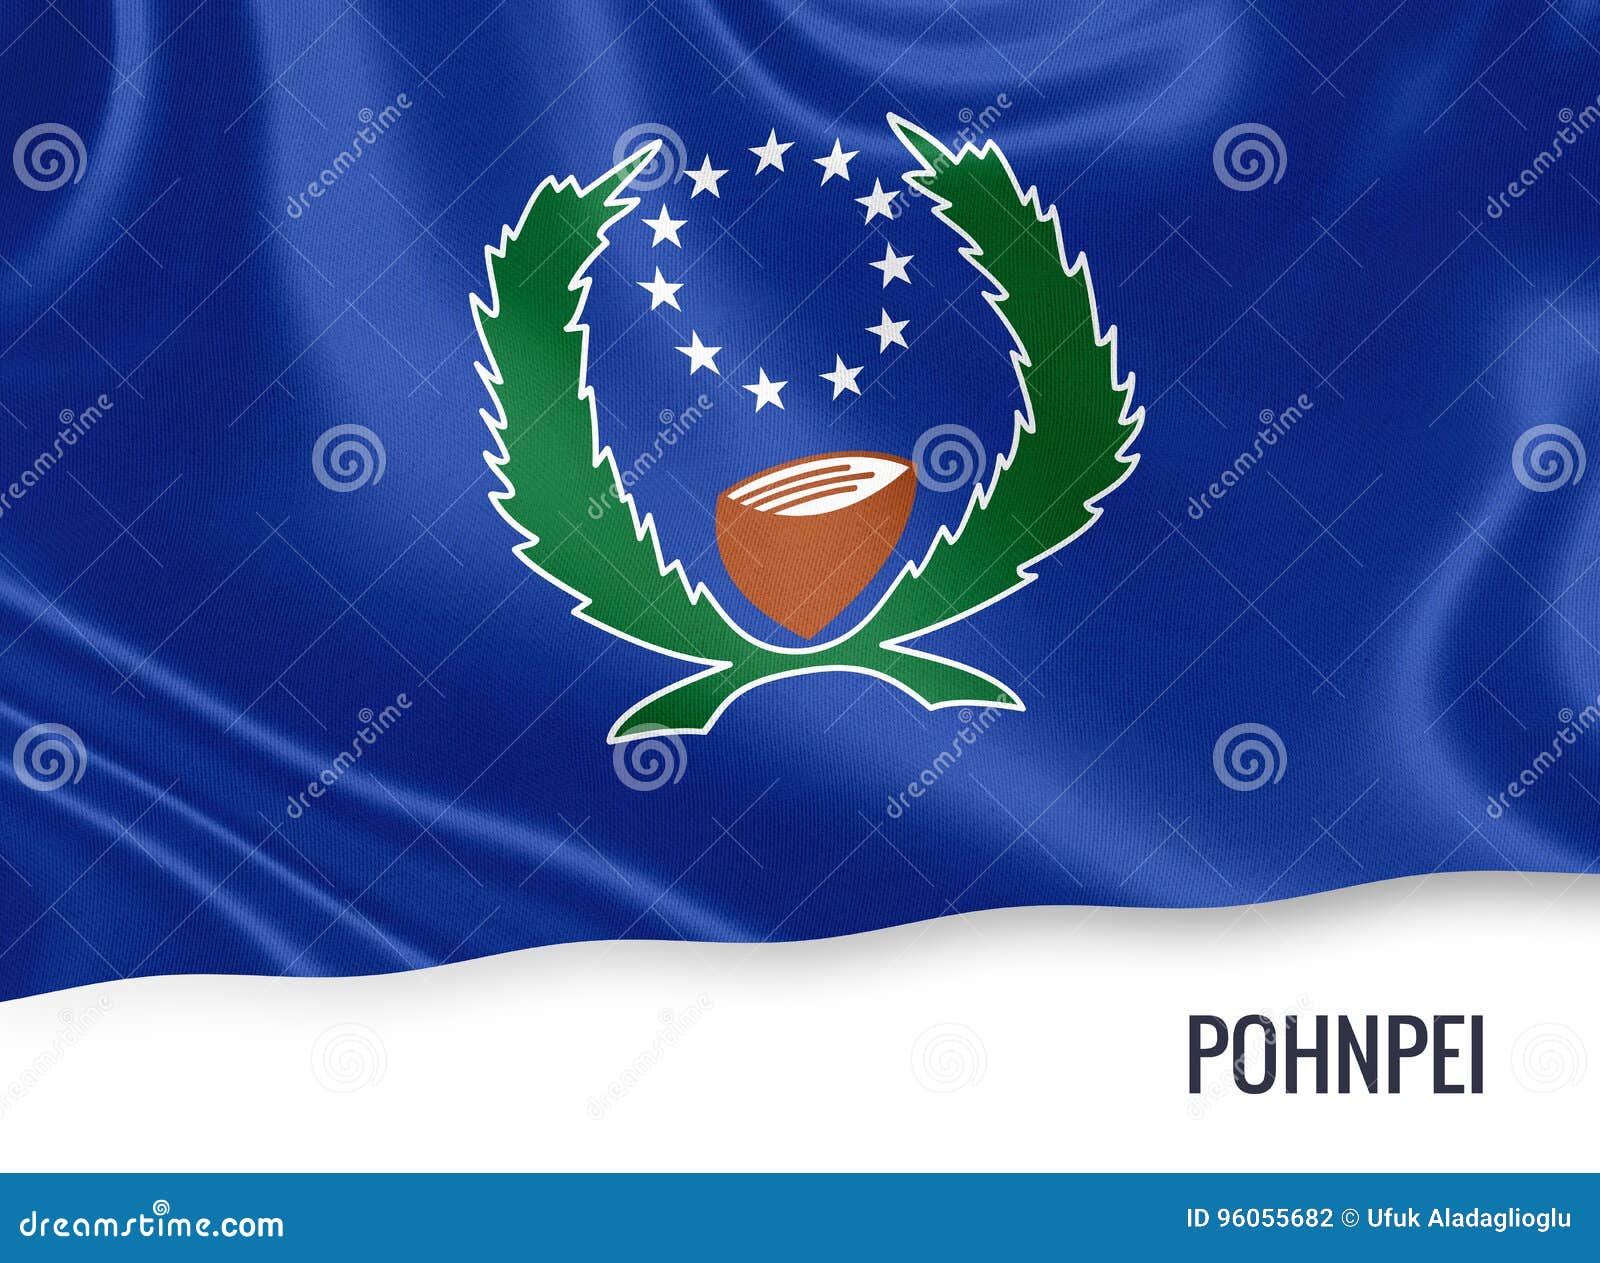 les Etats federes de micronesie drapeau